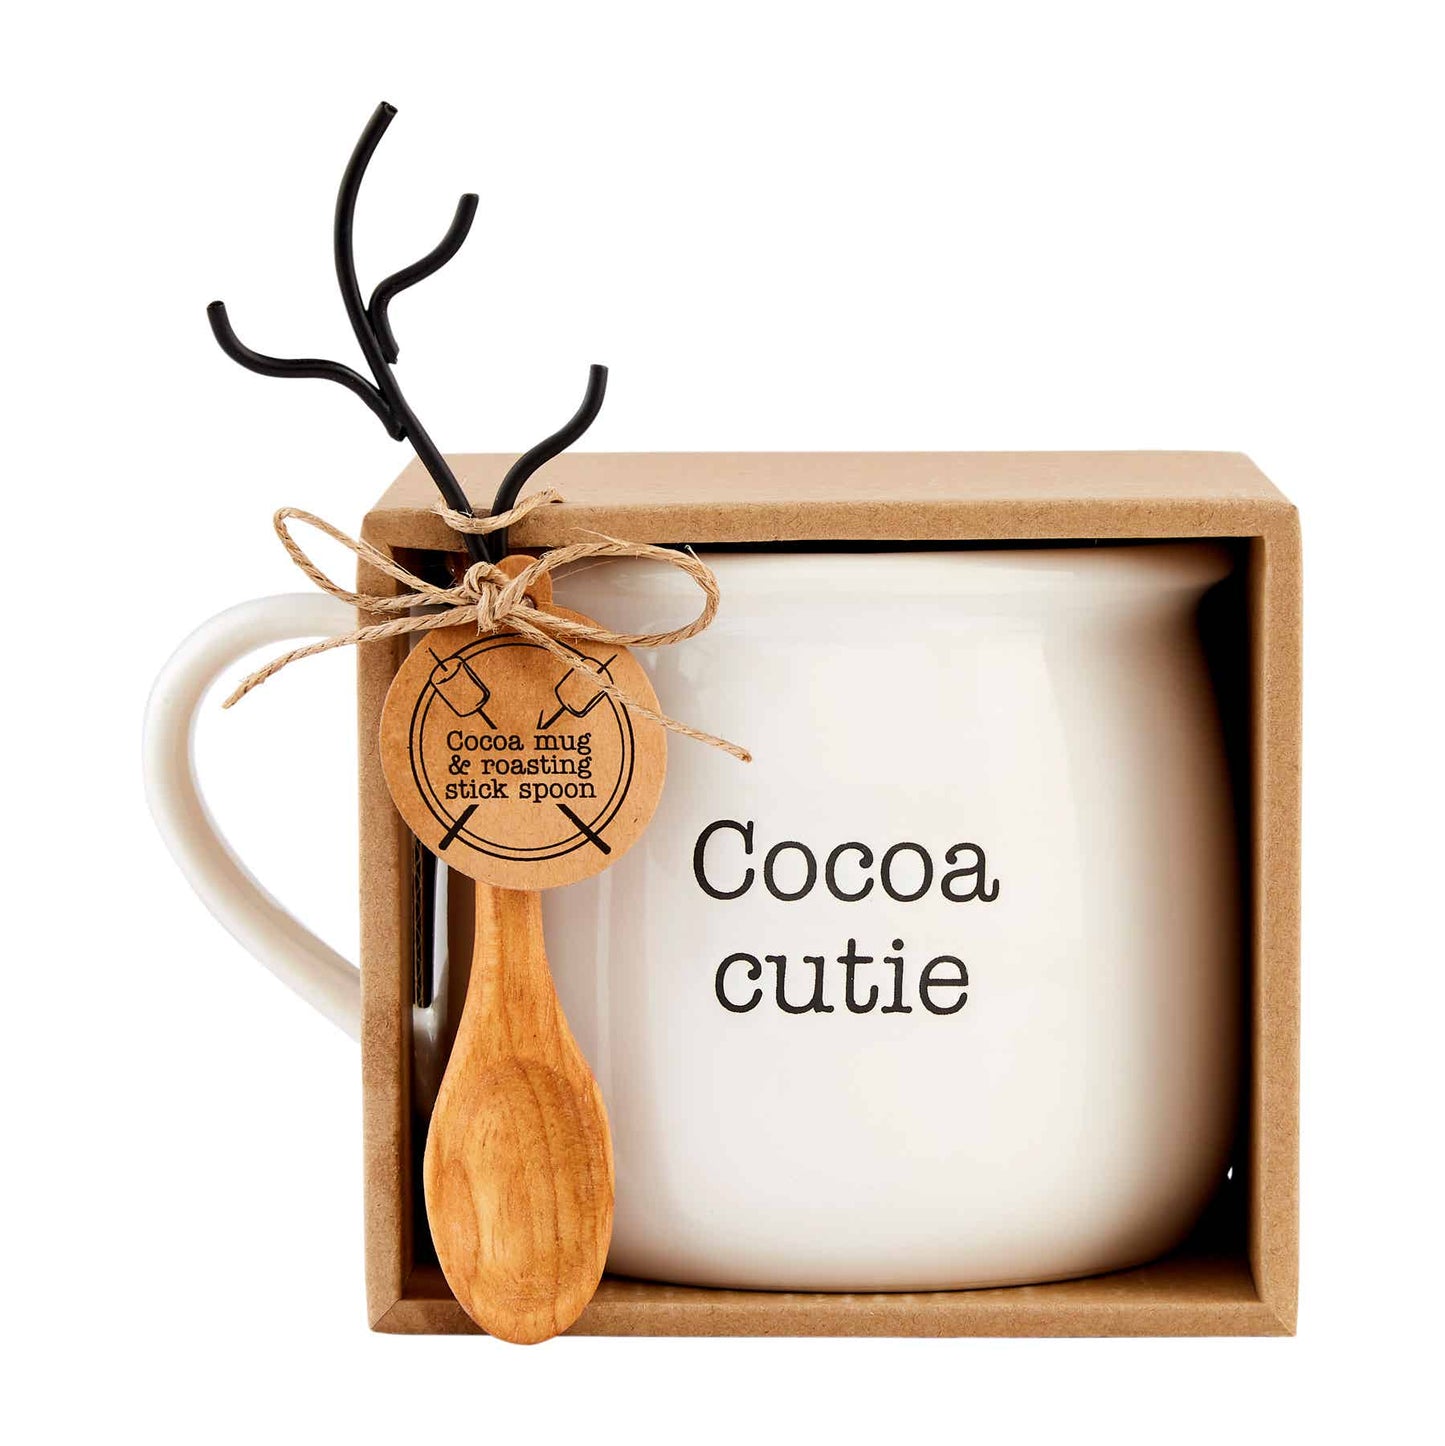 Cocoa Cutie Hot Chocolate Mug Set